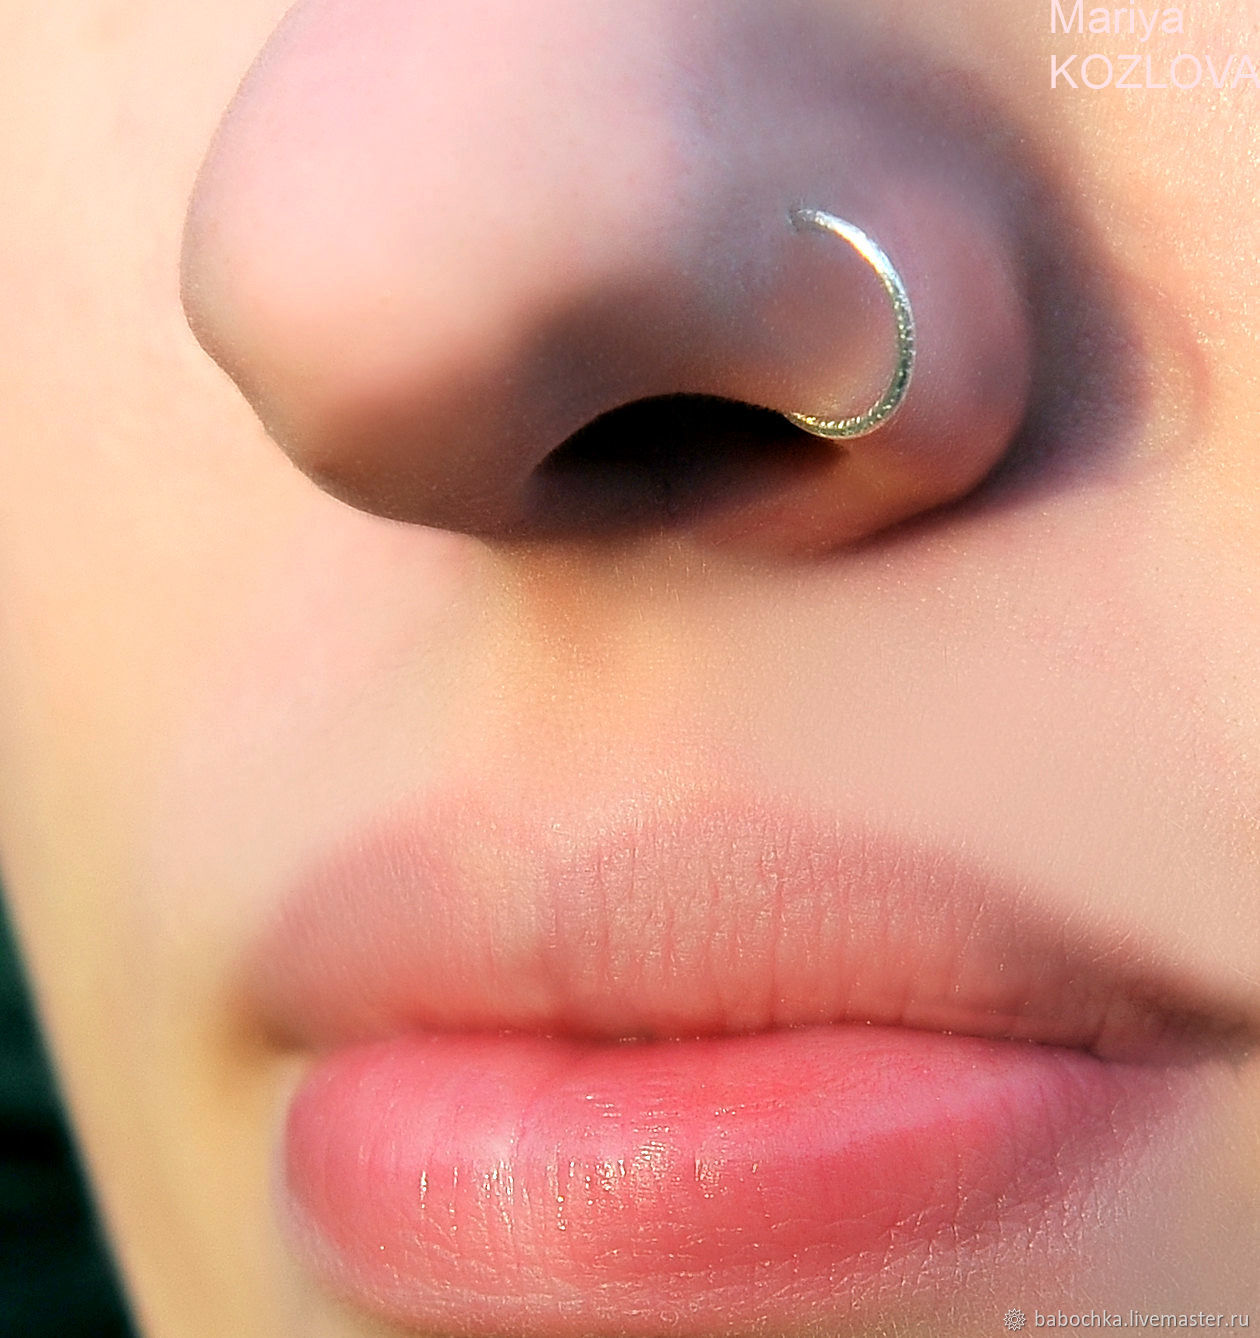 Пирсинг носа с кольцом